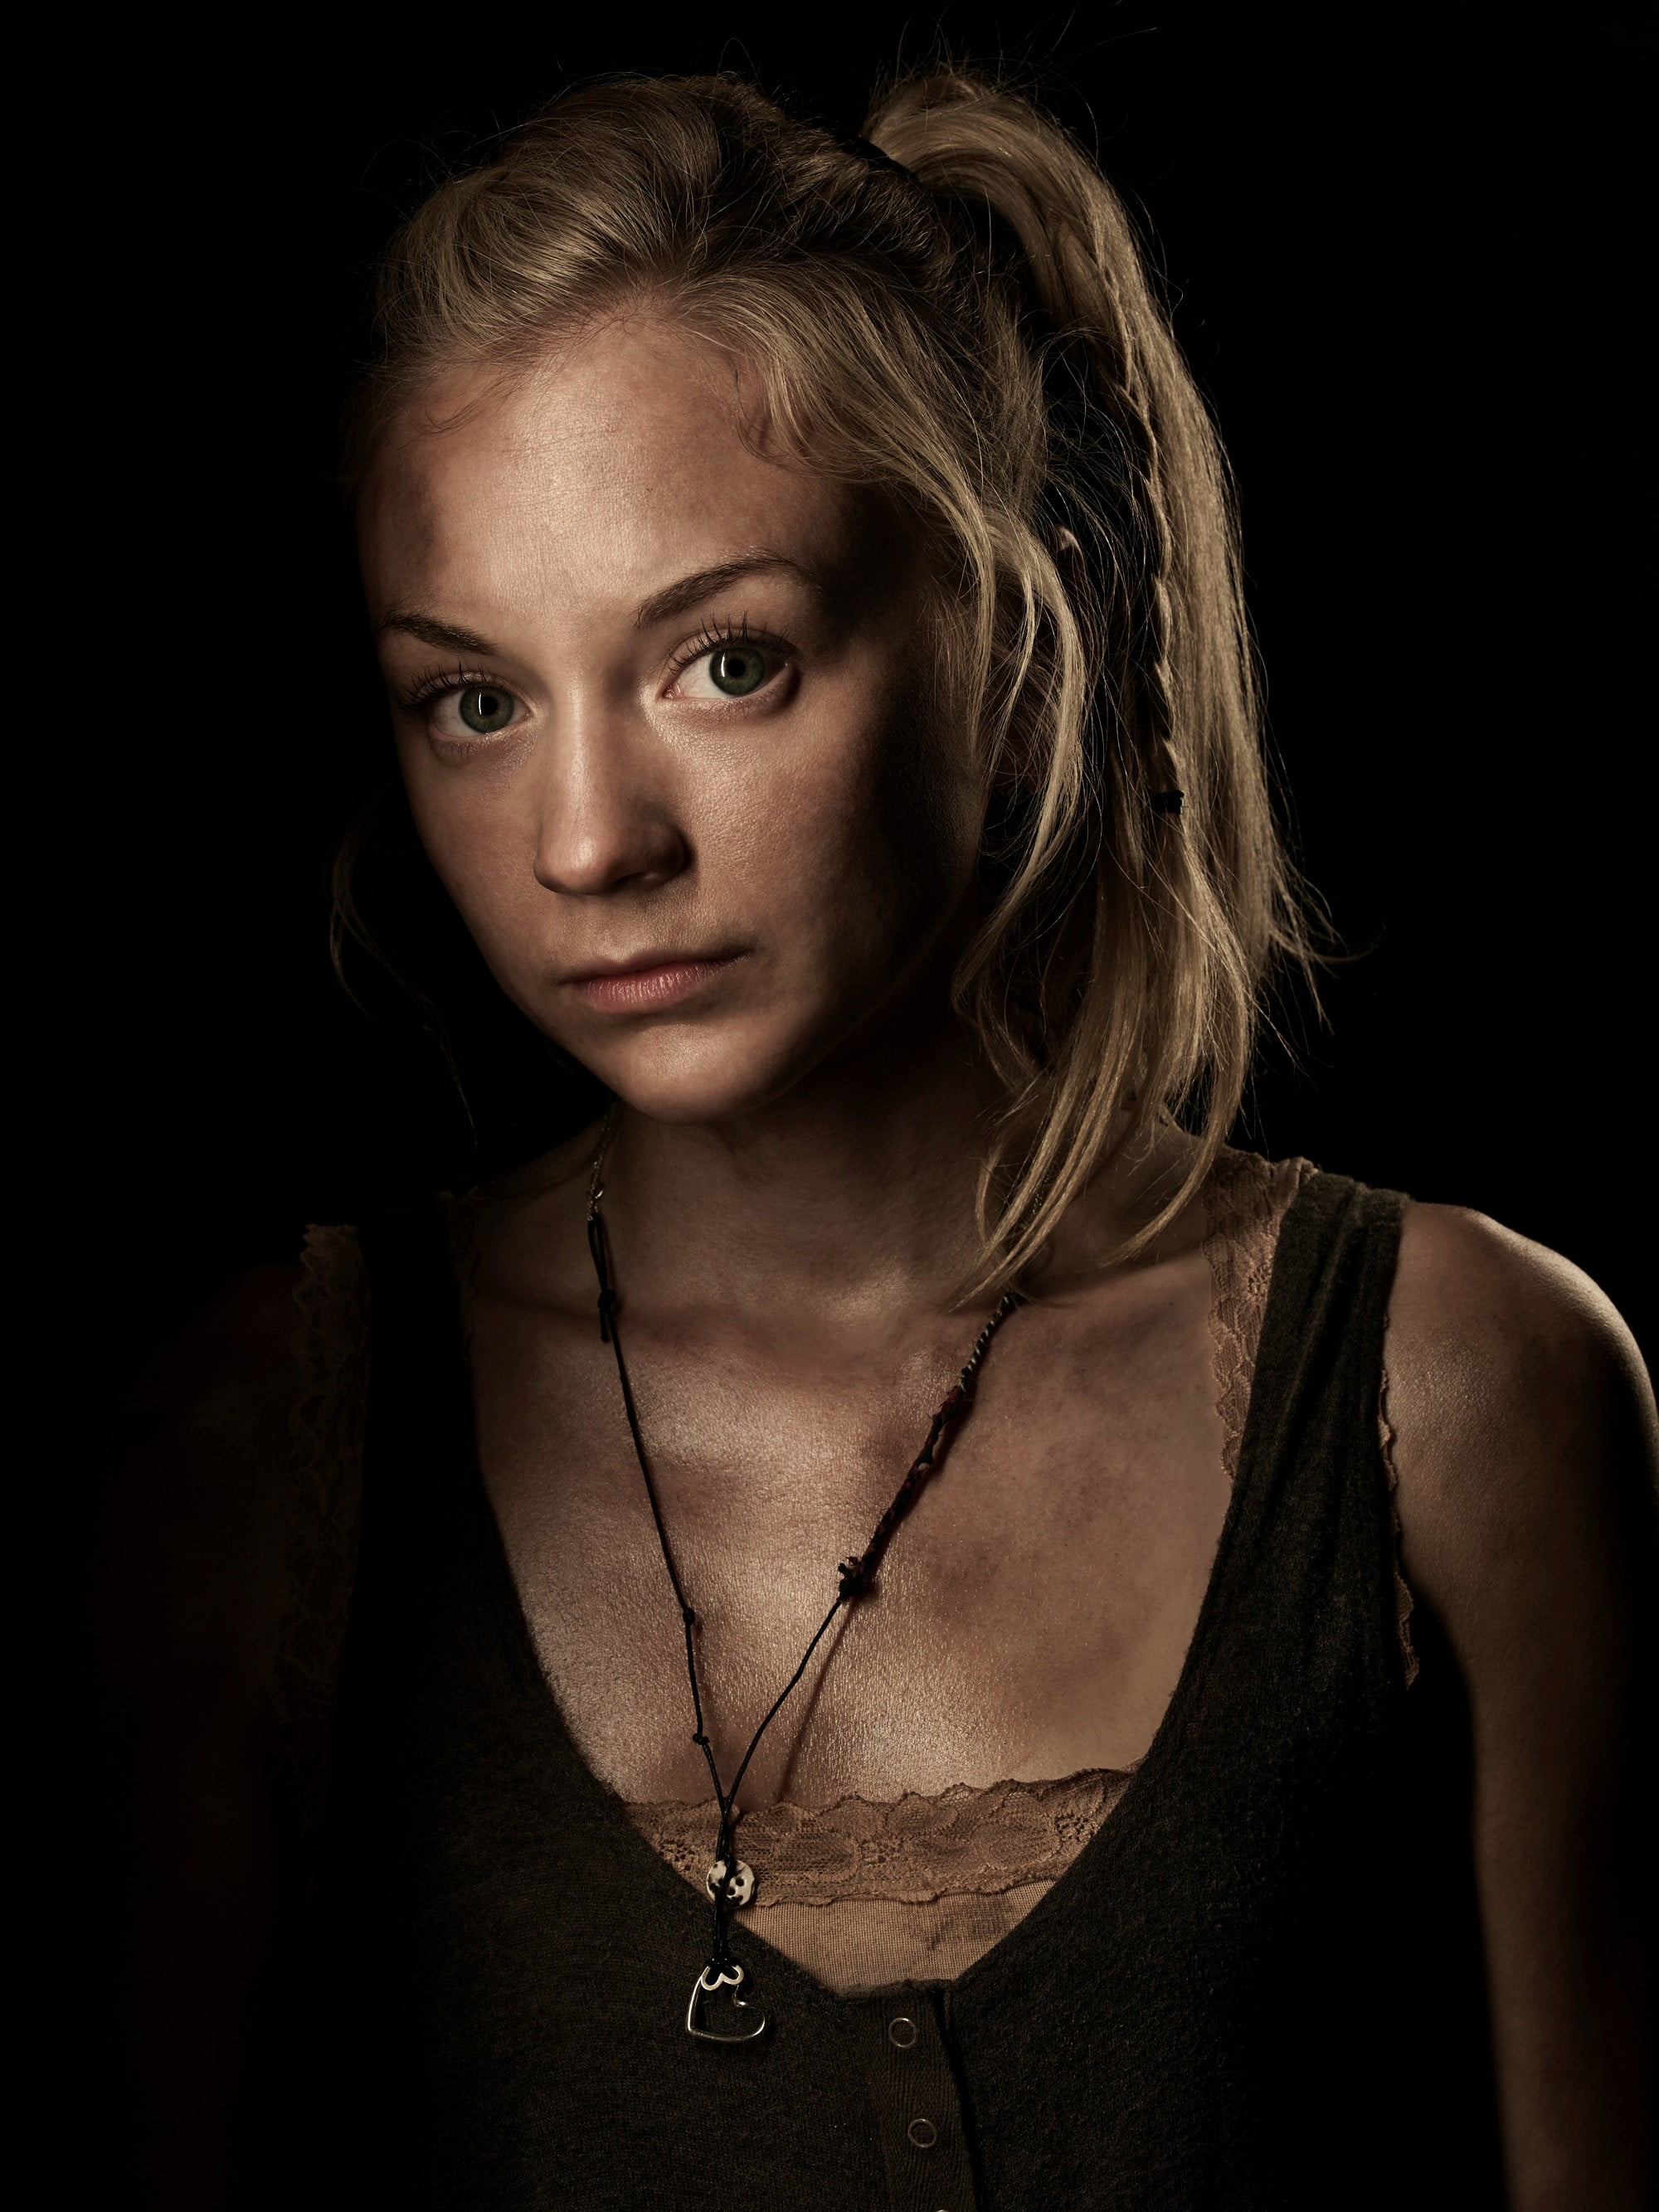 Beth Walking Dead - HD Wallpaper 